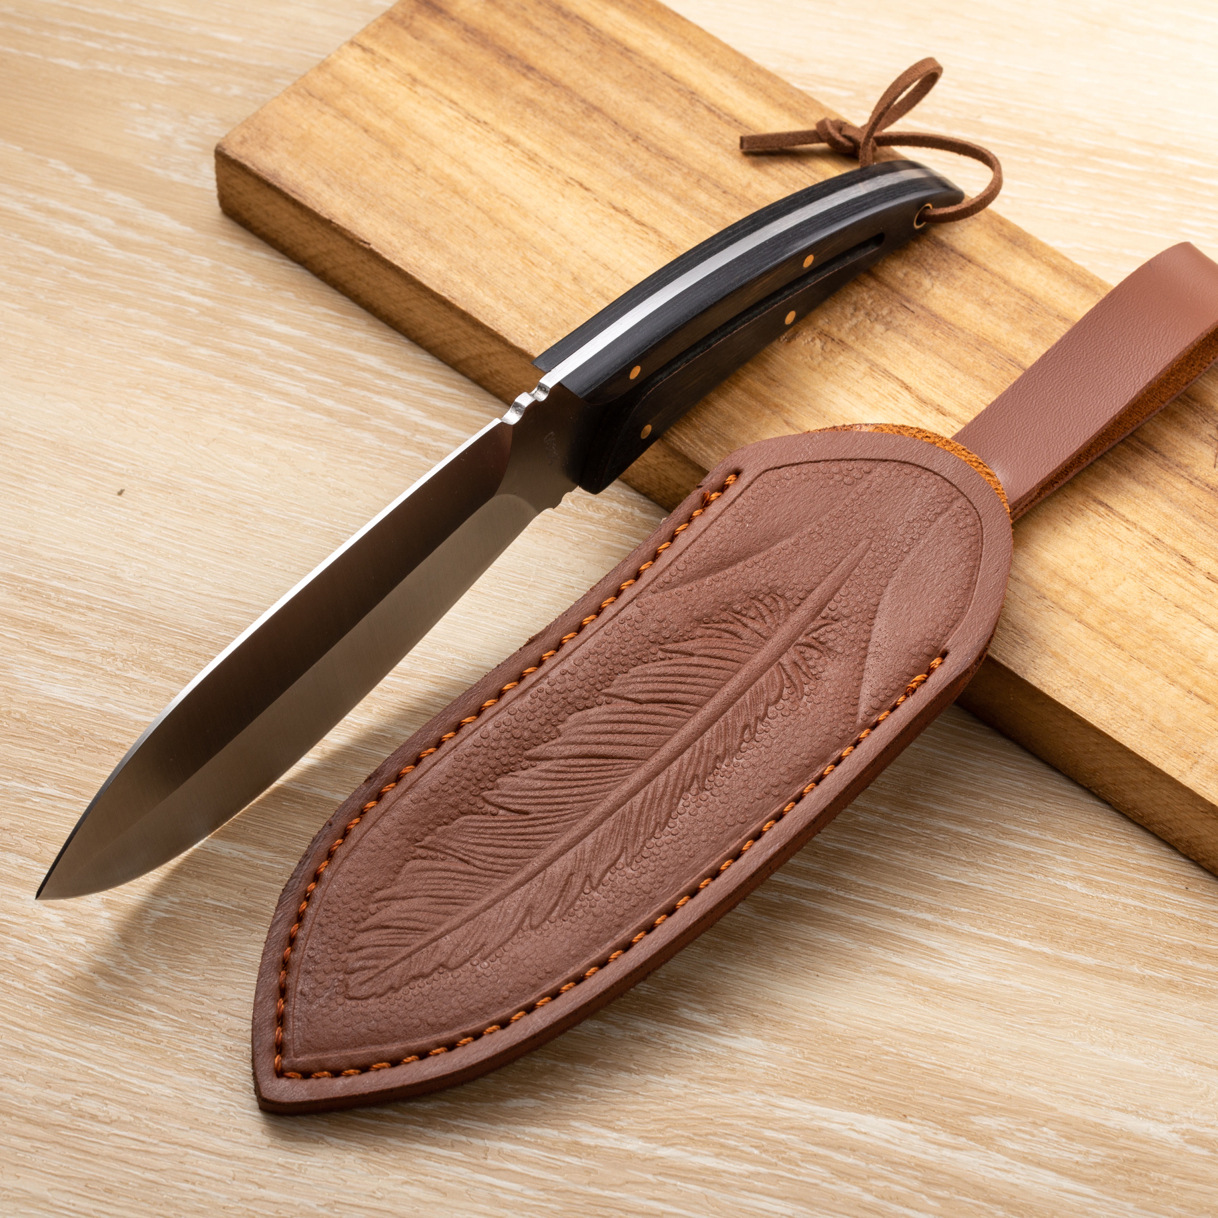 最高品質R8341屋外サバイバルストレートナイフ5cr15movサテンブレードフルタンウッドハンドル革張りの鞘付きナイフ